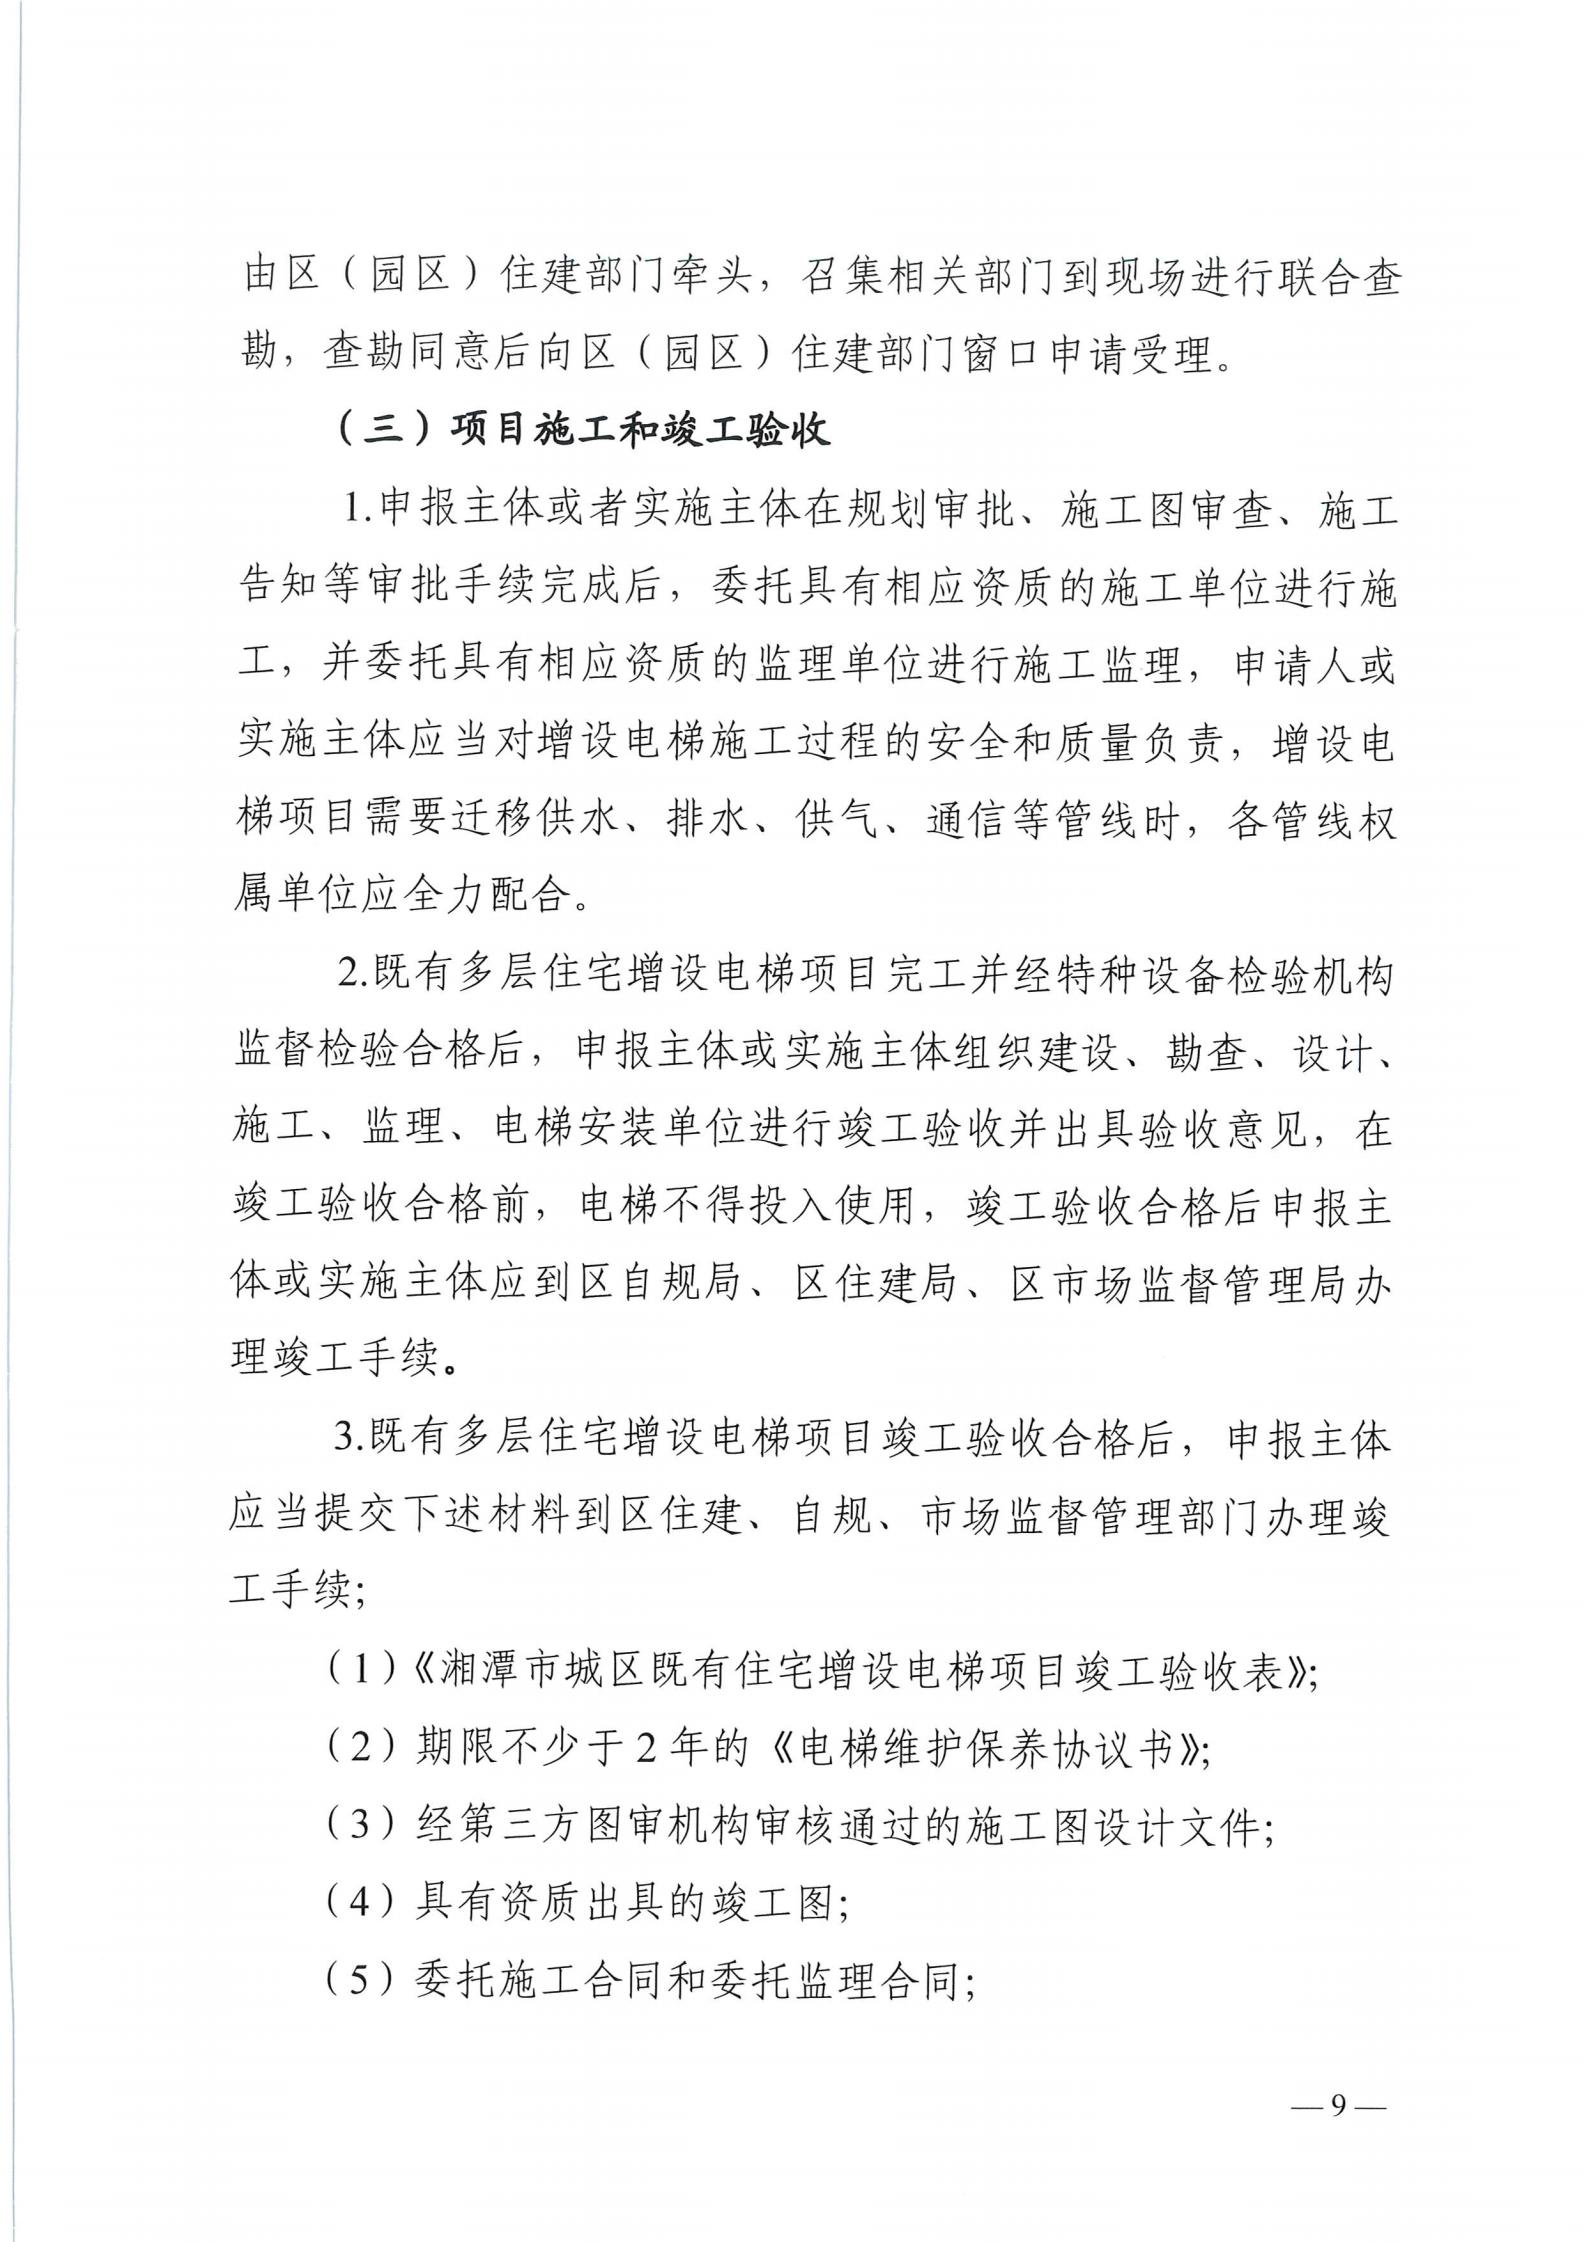 湘潭市六部门印发有关加装电梯的通知(图9)